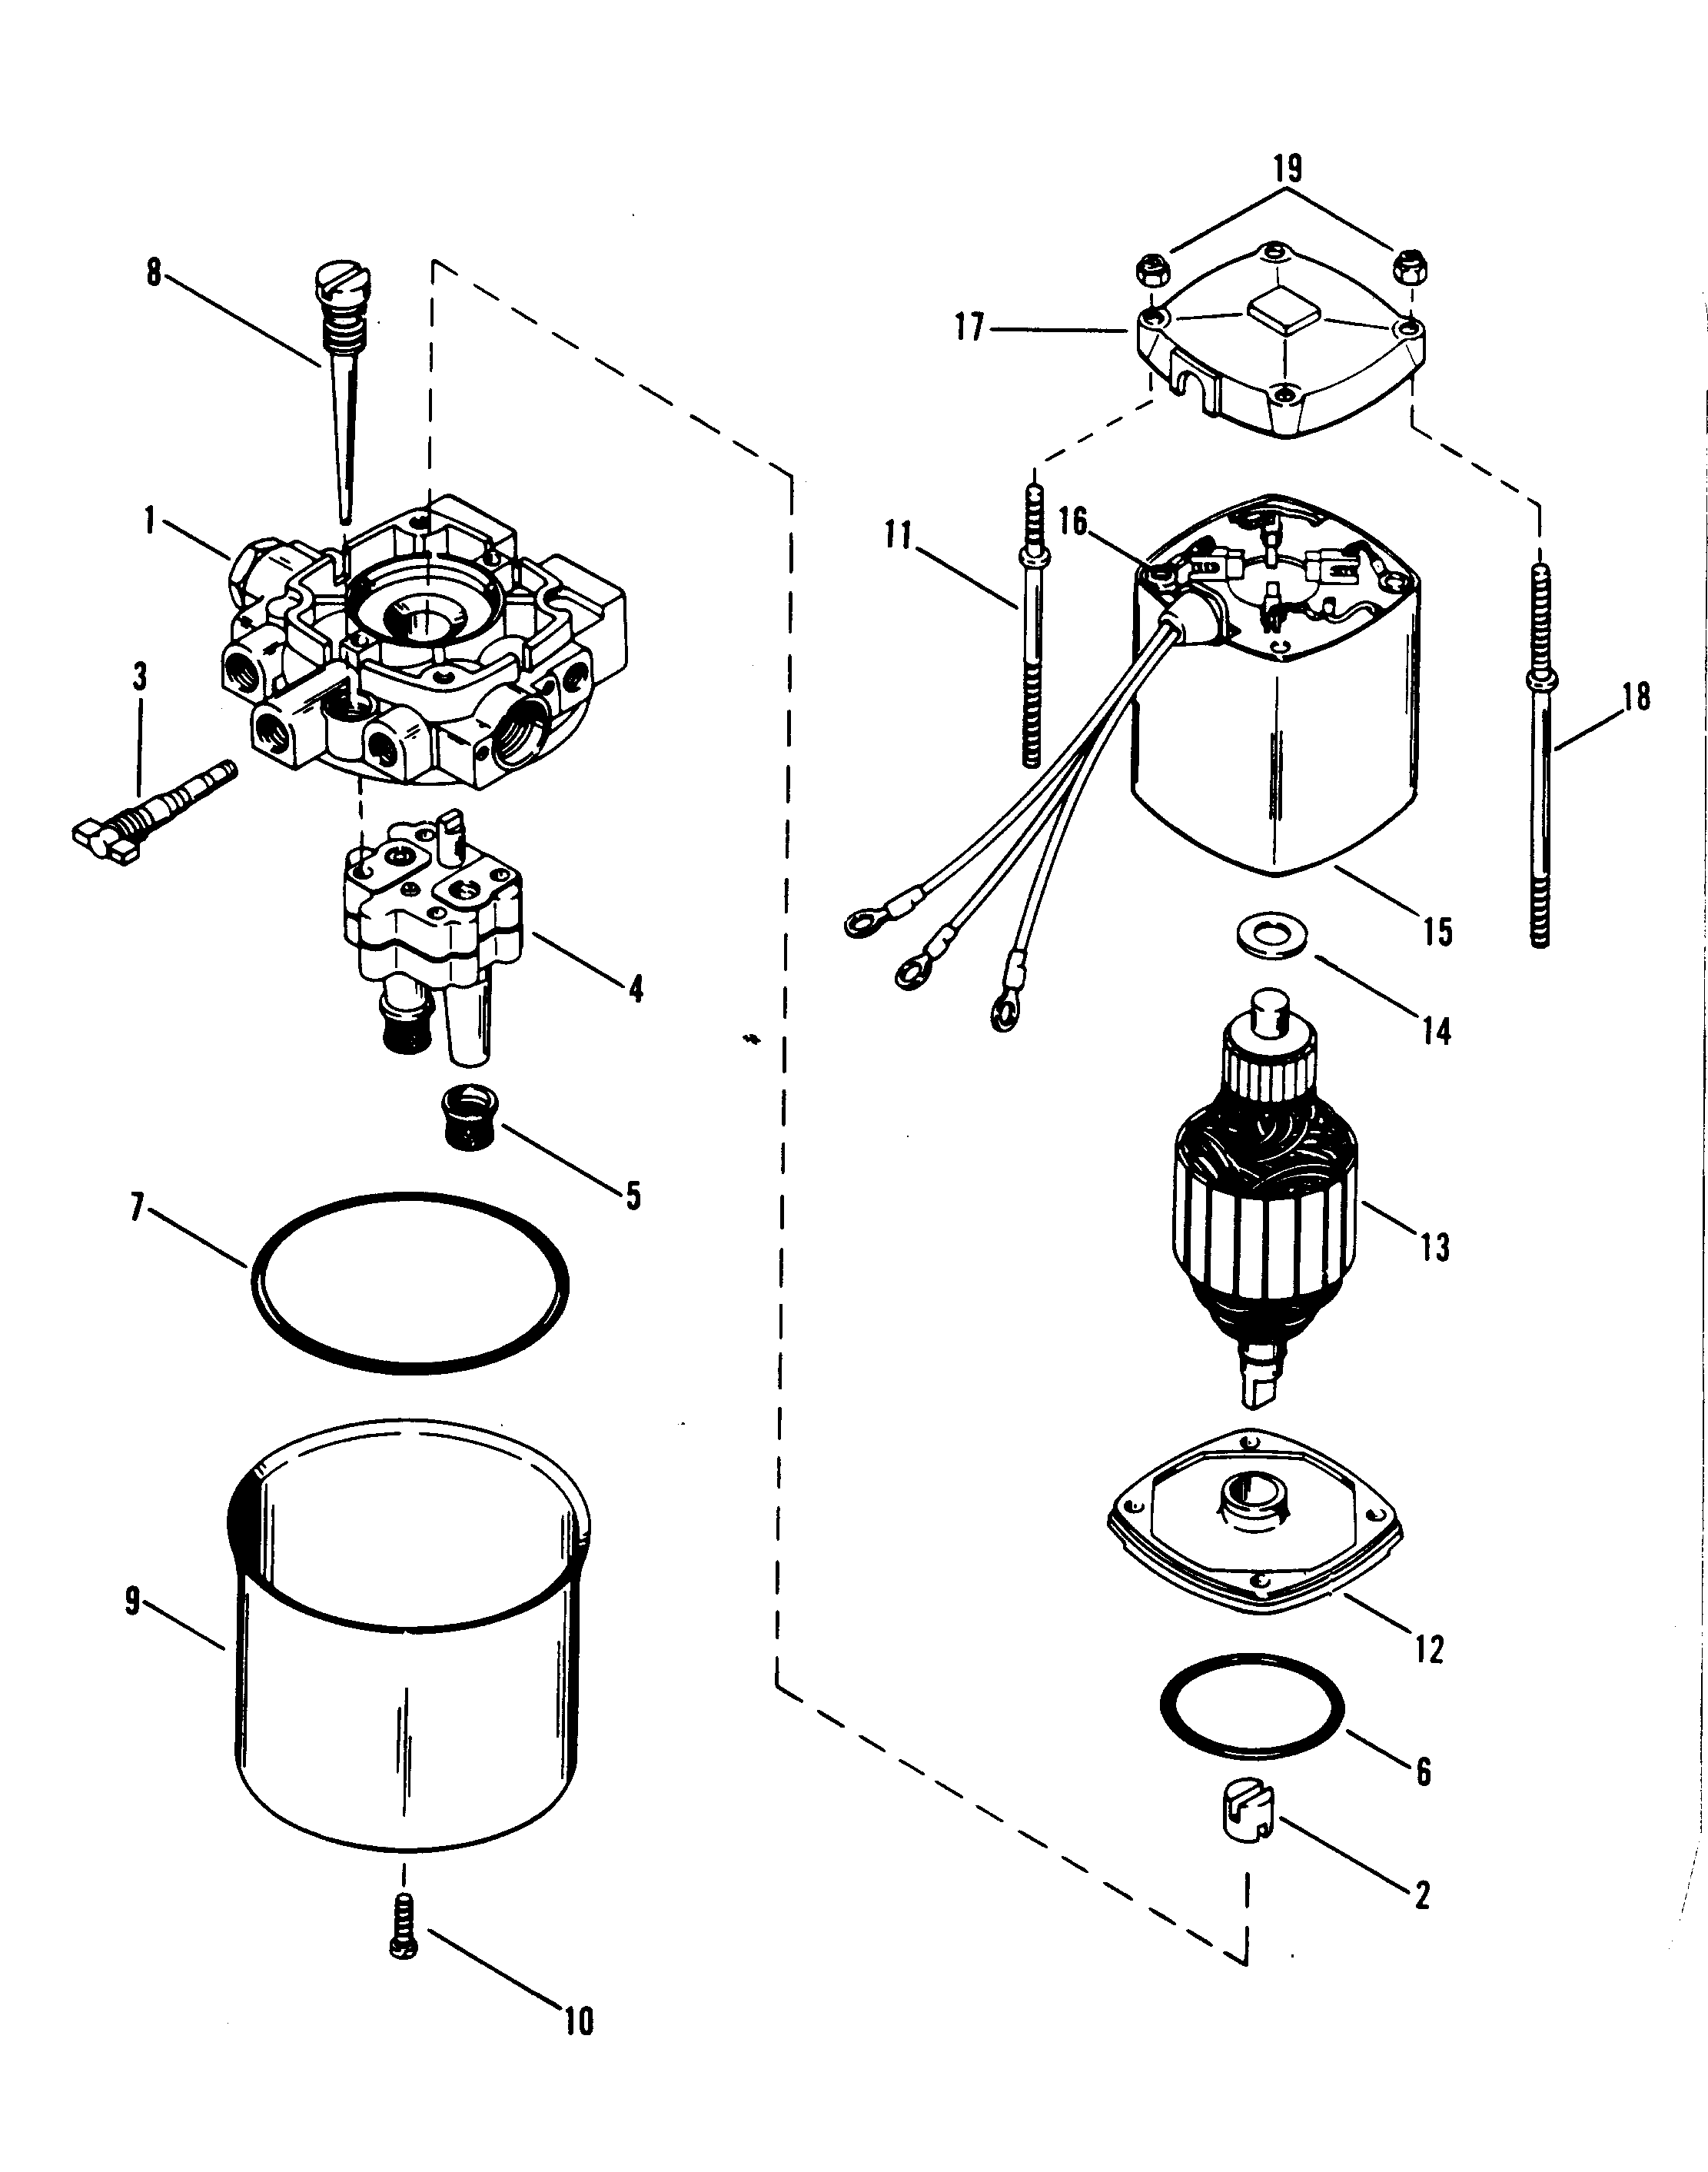 HYDRAULIC PUMP (DESIGN I)